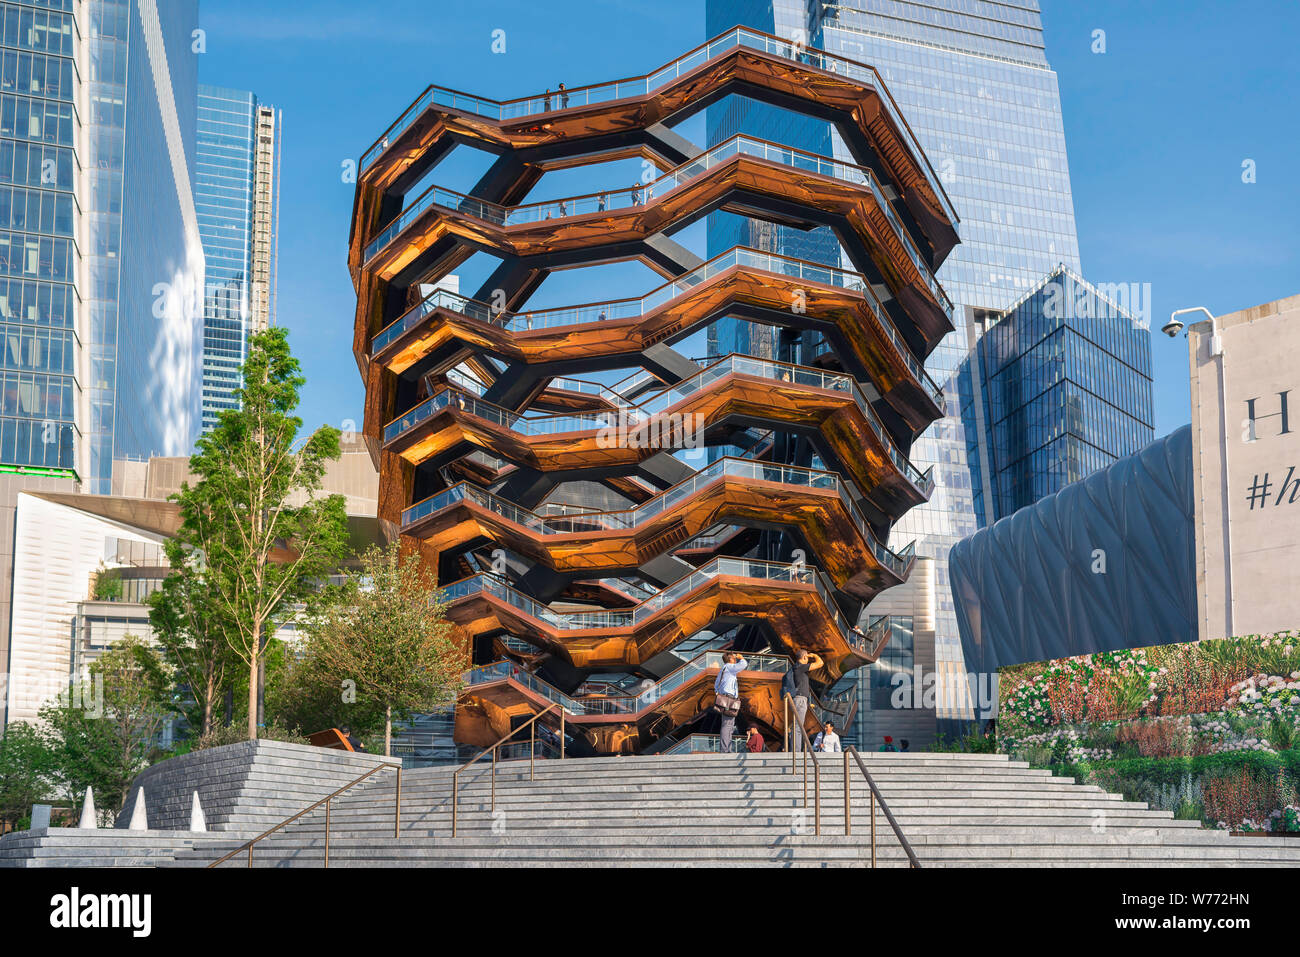 Schiff New York City, Aussicht im Sommer des Schiffes Gebäude (2019), entworfen von Thomas Heatherwick und in Hudson Yards, Manhattan, New York City gelegen. Stockfoto